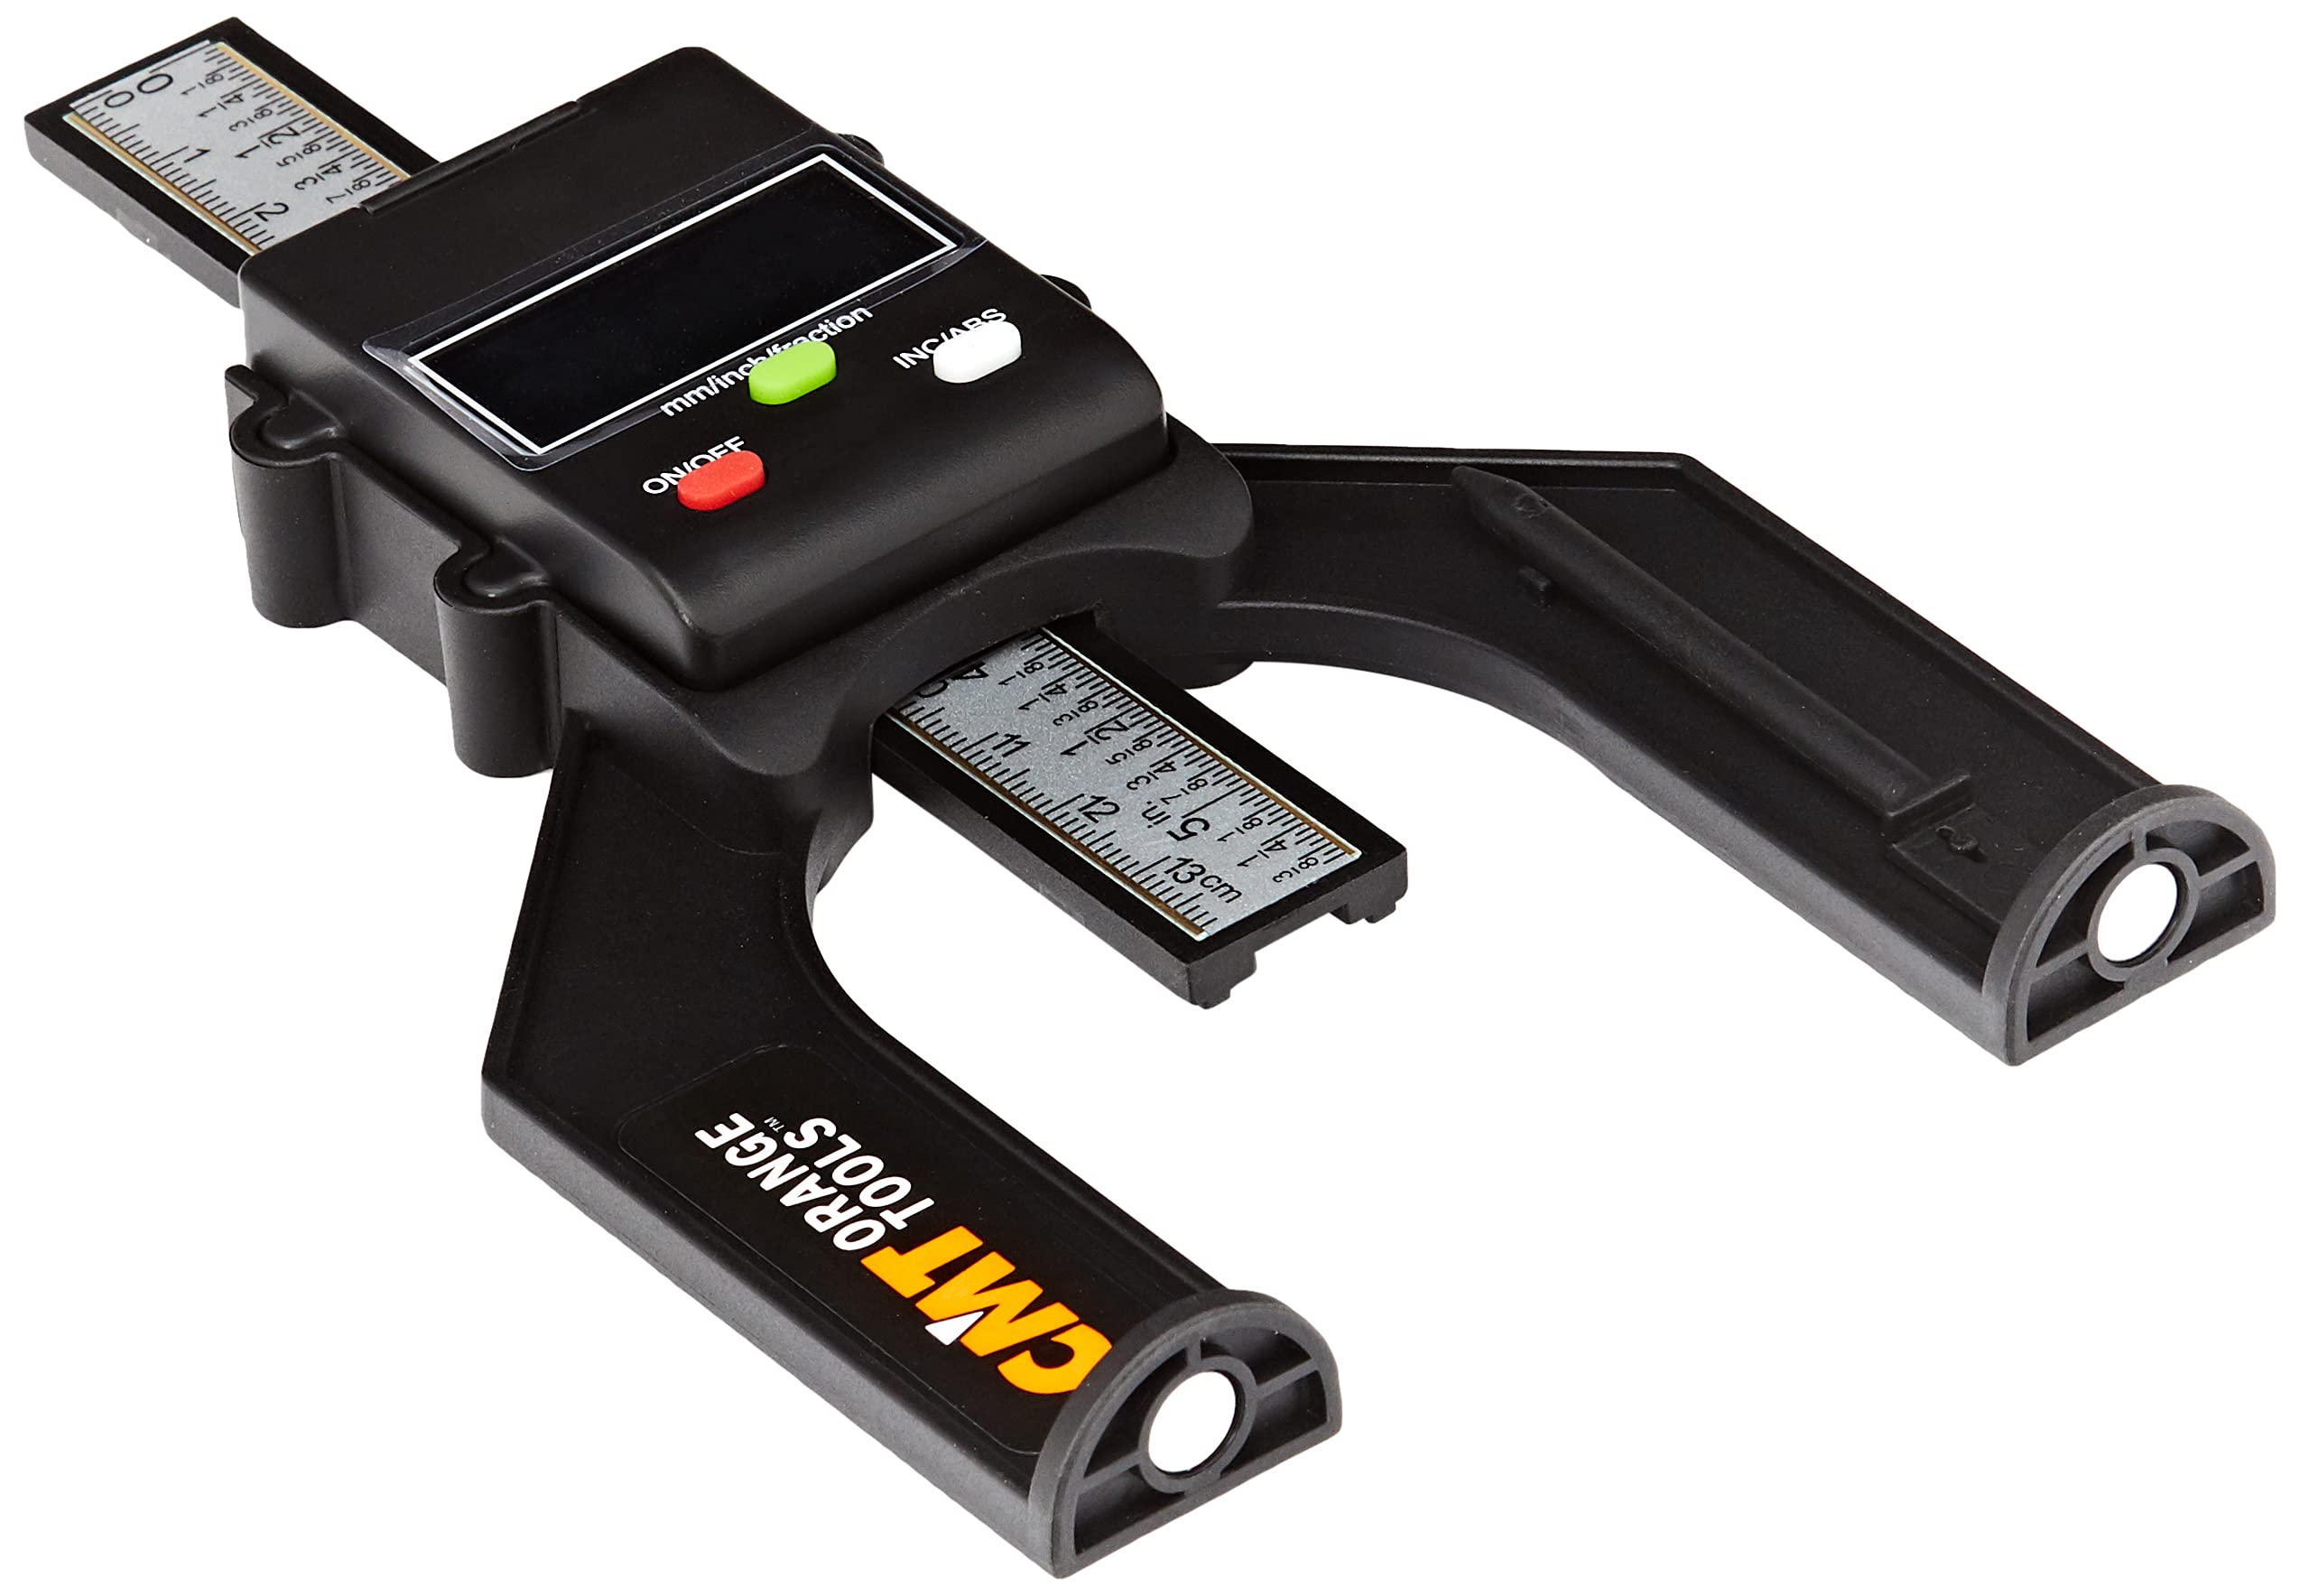 CMT dhg-001 Digitaler Messschieber-Werkzeug mit Tiefenanschlag 0 – 80 mm, schwarz